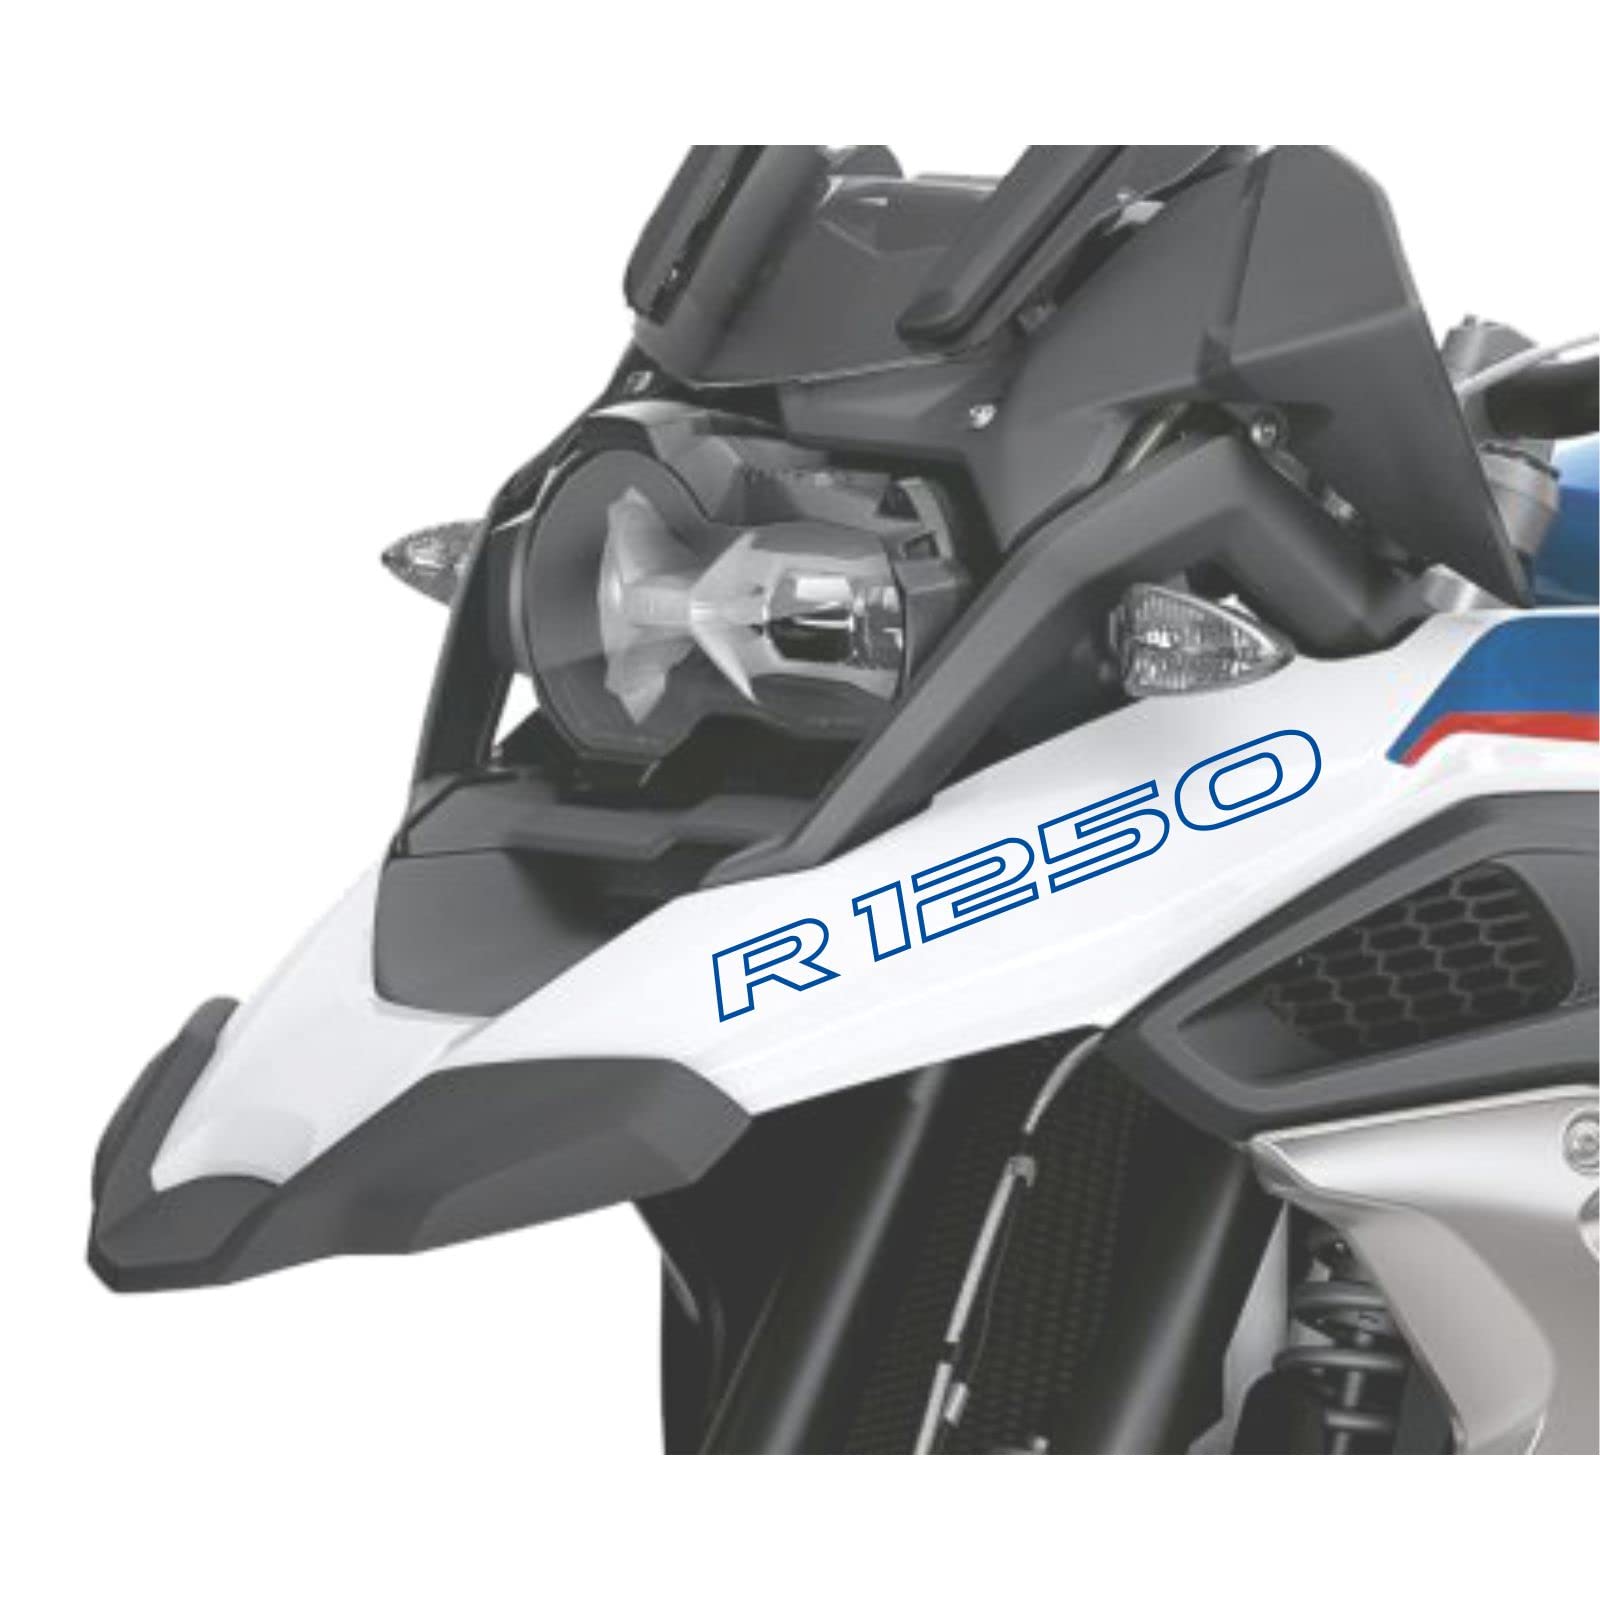 2pcs Aufkleber R1250 kompatibel für Motorrad BMW R1250 GS R 1250 HP Adventure (Blue) von Black Doves Graphics